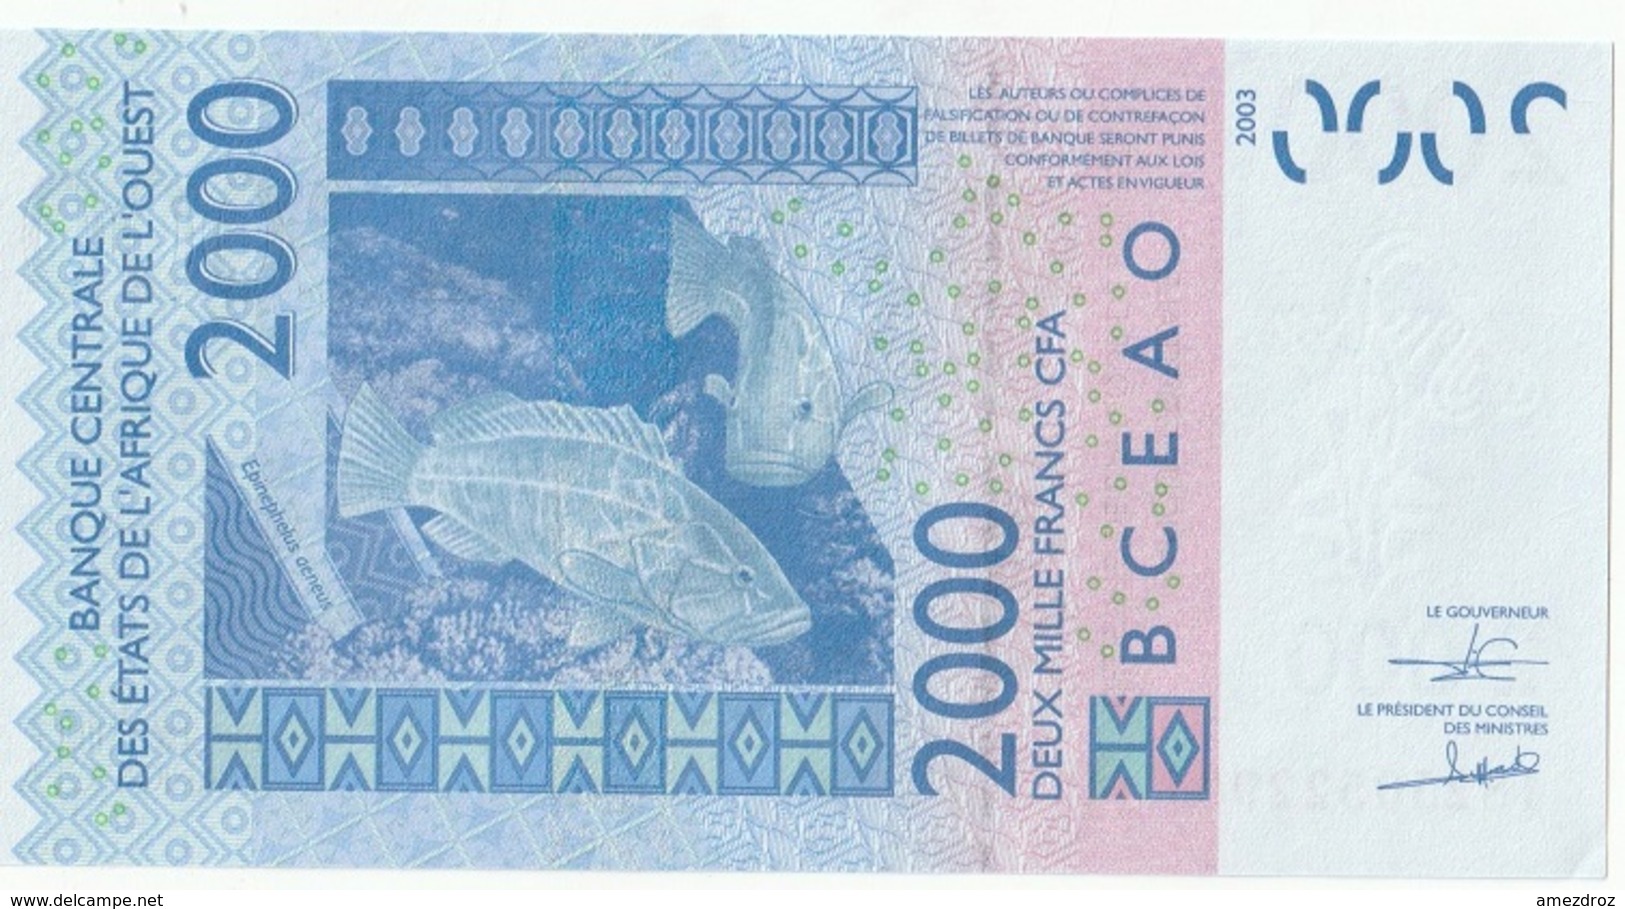 Billet De 2000 Francs CFA XOF Non Circulé Afrique De L'Ouest Origine Cote D'Ivoire - Costa De Marfil